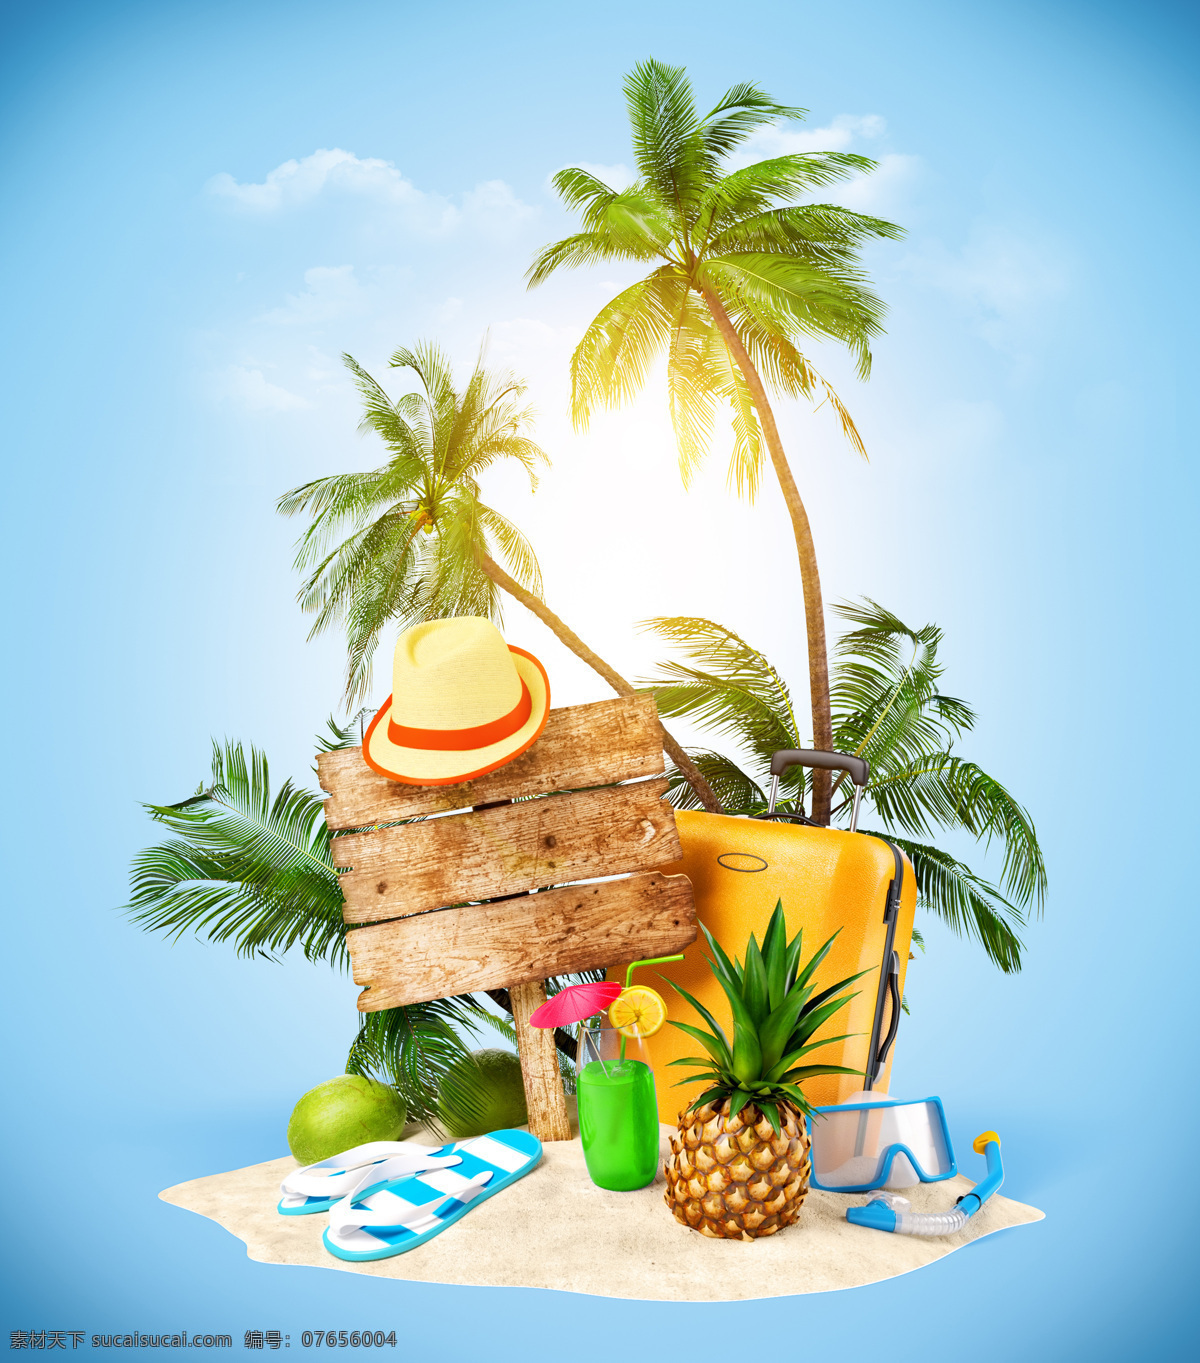 椰树 帽子 蓝天 白云 拖鞋 波罗 沙滩 牌子 其他类别 环境家居